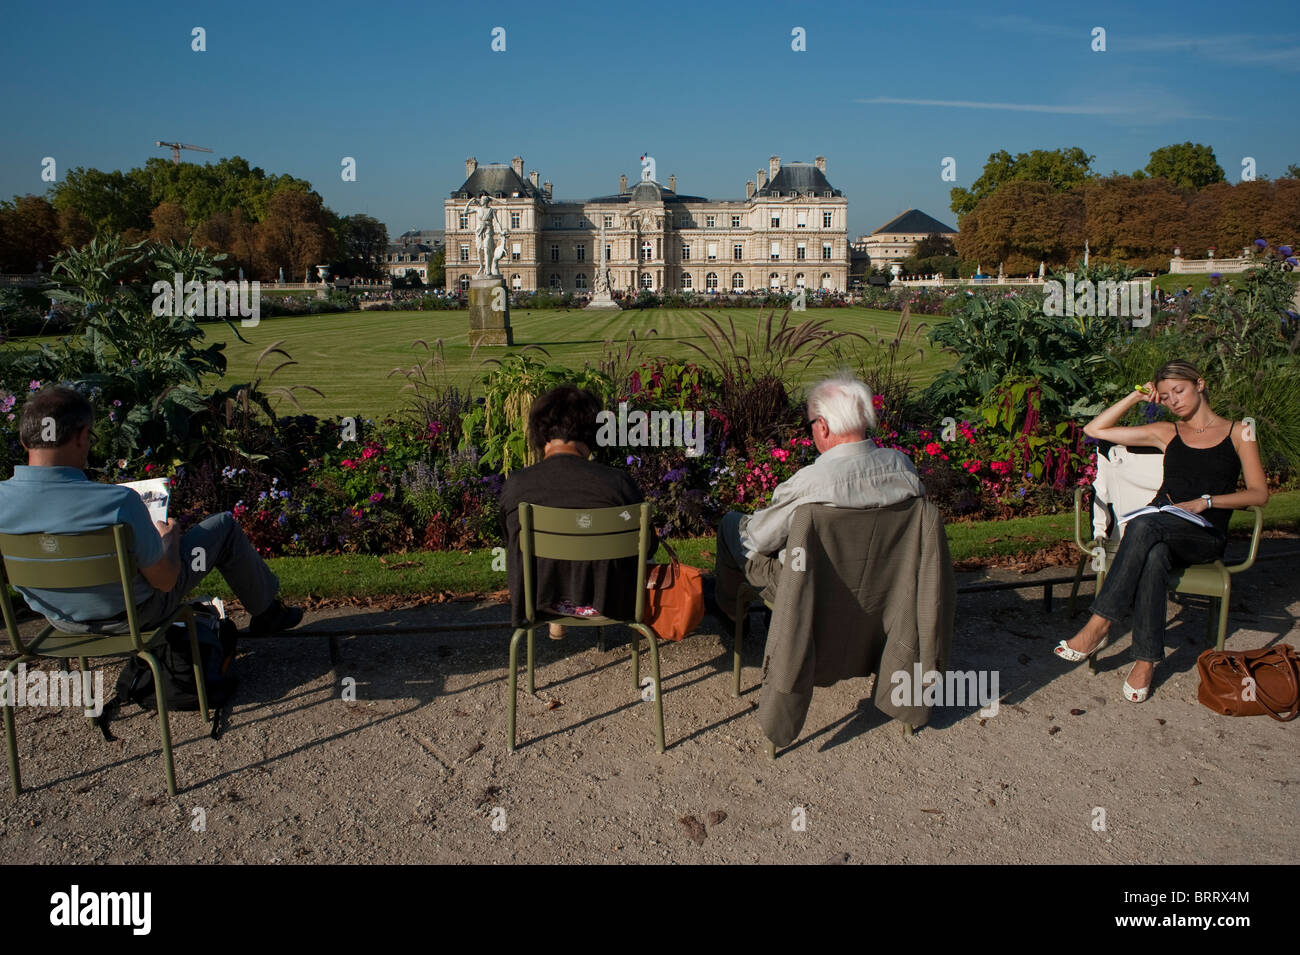 Paris, France, gens dans les jardins du Luxembourg, assis dans des chaises par derrière, dans le parc de la ville, jardins du Luxembourg, jardin urbain paysagé, biodiversité urbanisation Banque D'Images